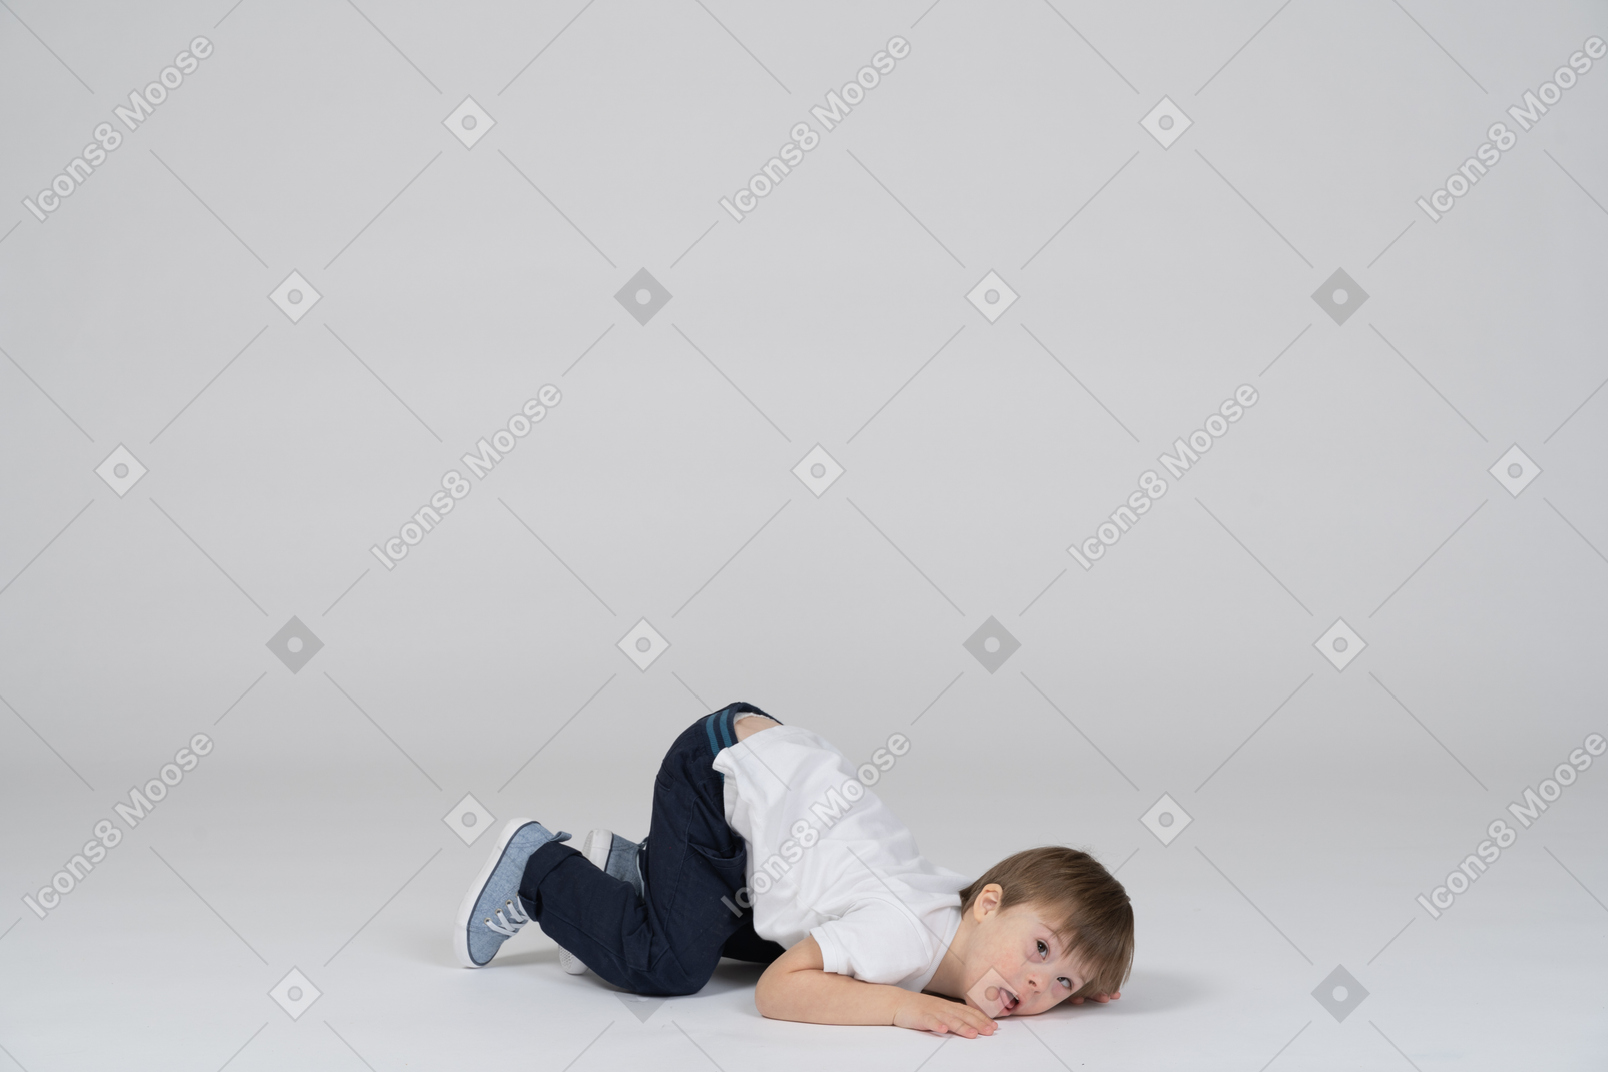 床にうつぶせに横たわっている小さな男の子